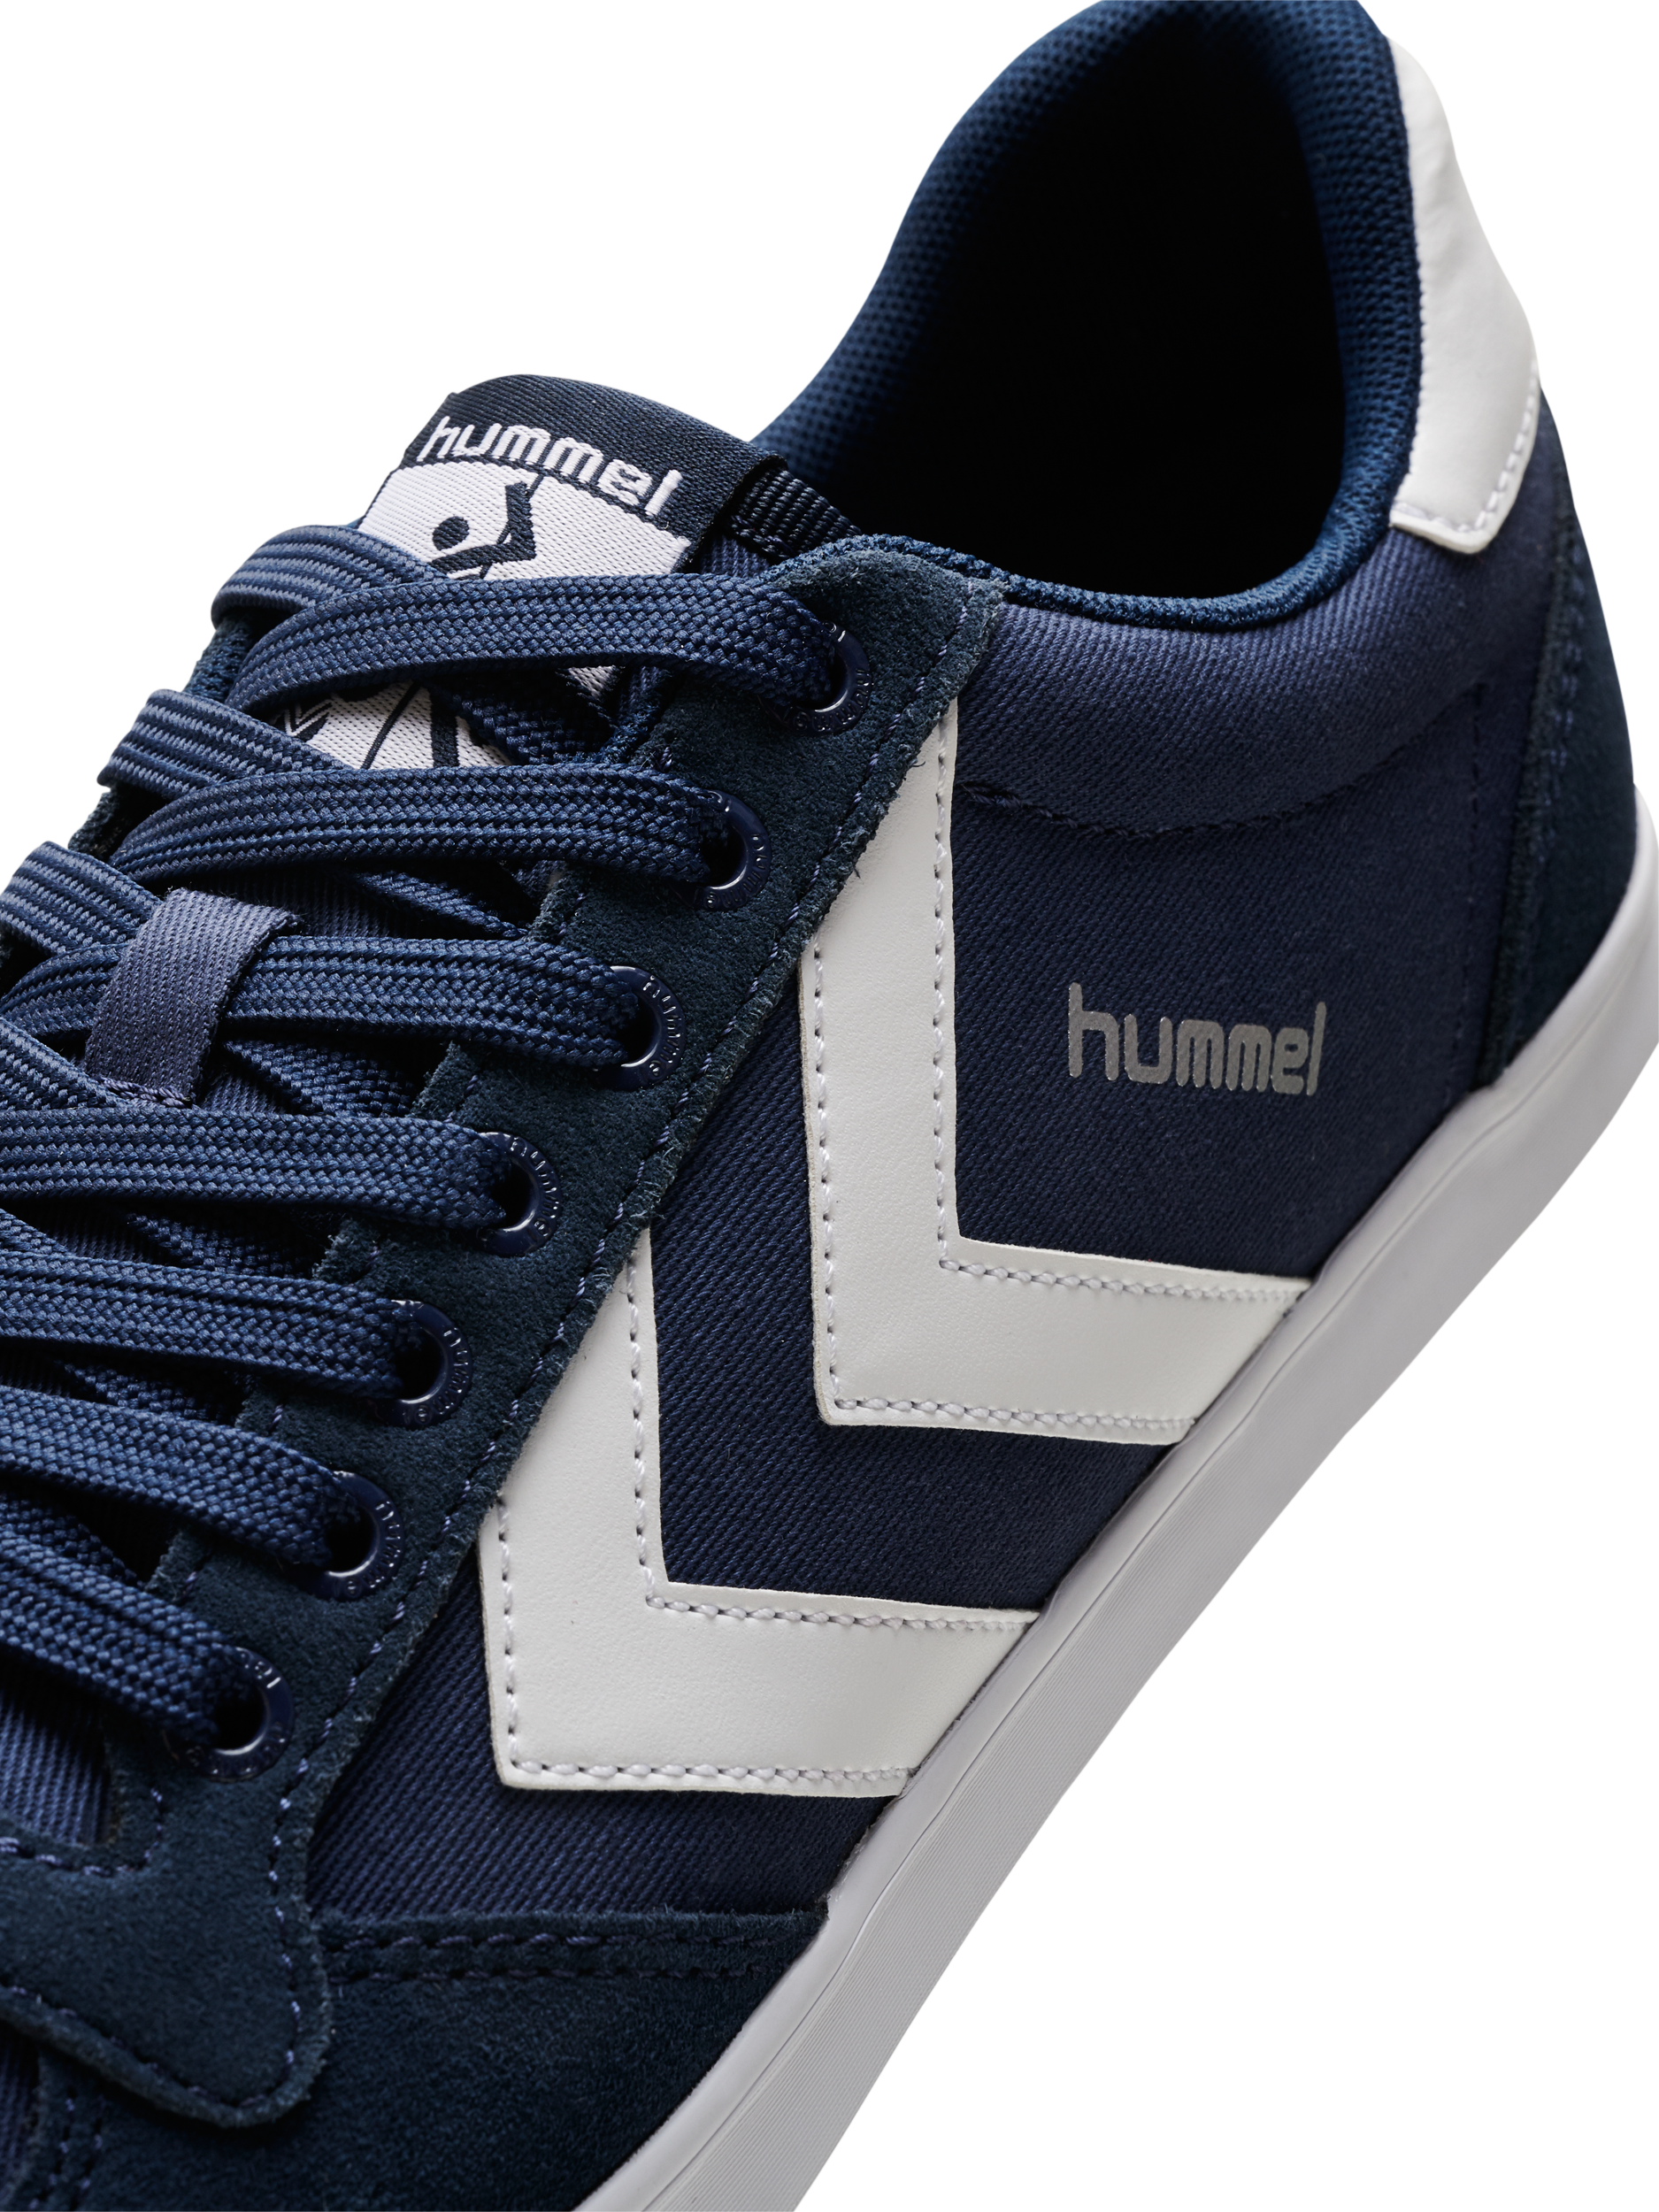 Hummel Slimmer Stadil Low Indoor Sneaker Chaussures De Sport Chaussures Bleu 063512 7647 